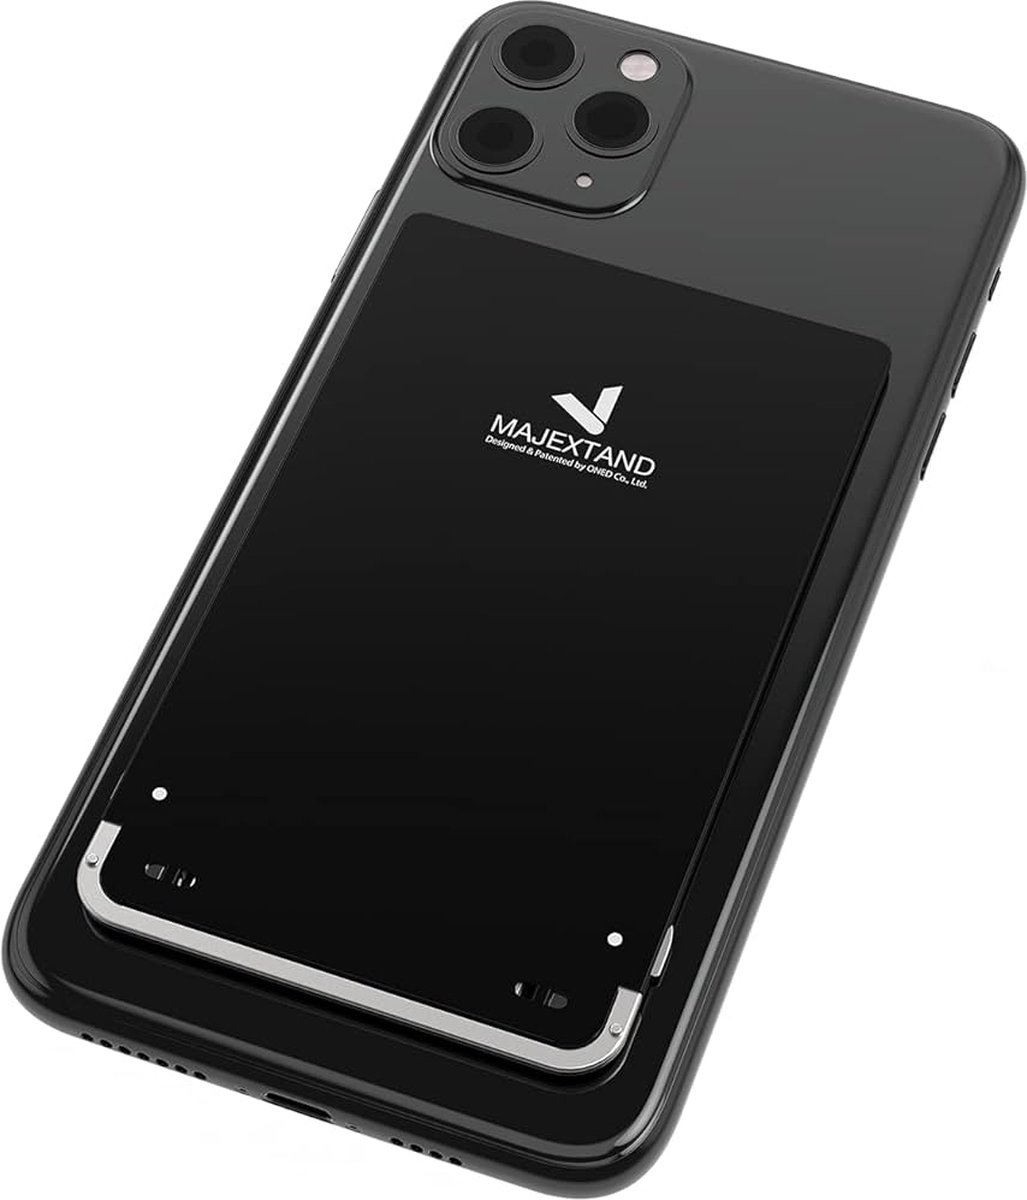 Majextand M voor Smartphone en Tablet - Zwart